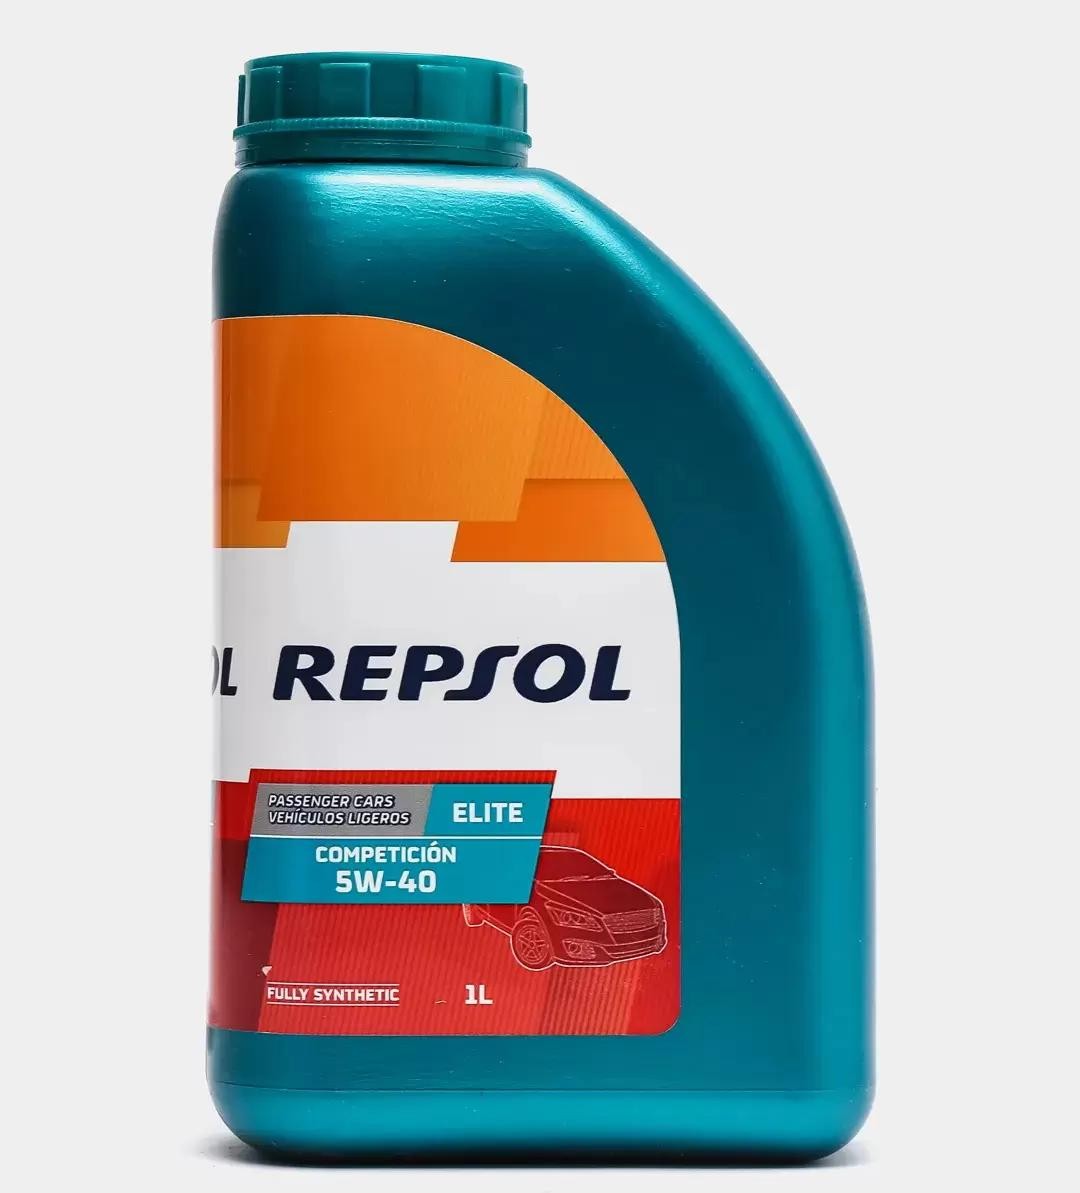 REPSOL ELITE, Competición 5W-40, 1l Motor oil RP141L51 buy